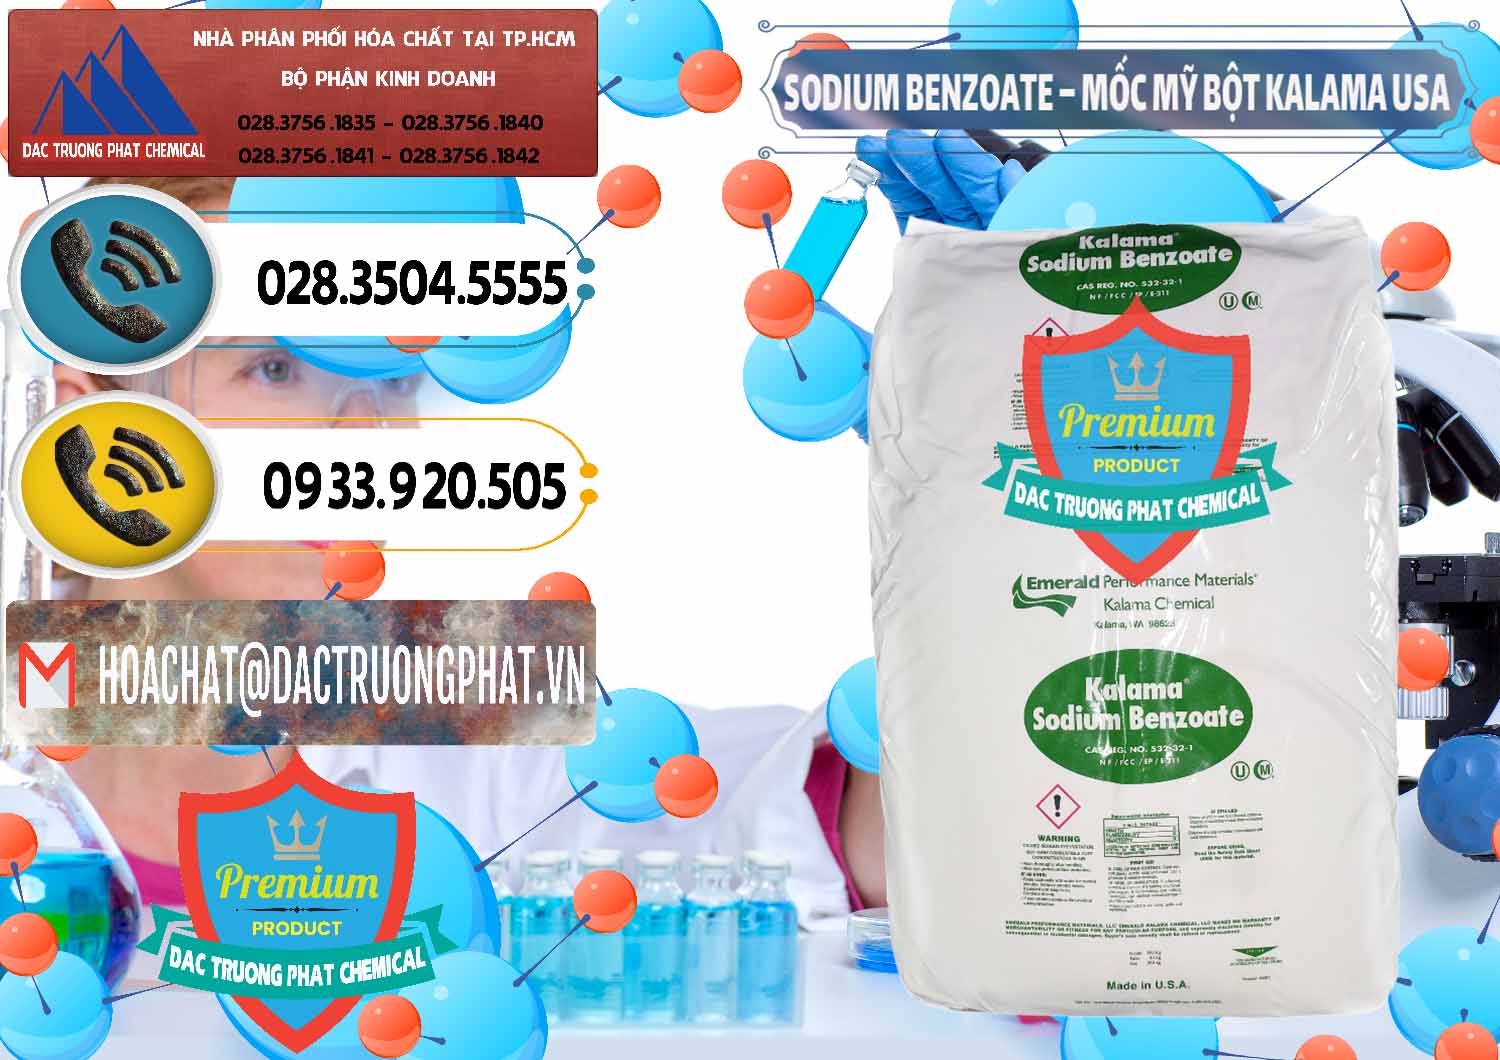 Chuyên bán ( cung ứng ) Sodium Benzoate - Mốc Bột Kalama Food Grade Mỹ Usa - 0136 - Chuyên cung cấp _ phân phối hóa chất tại TP.HCM - hoachatdetnhuom.vn